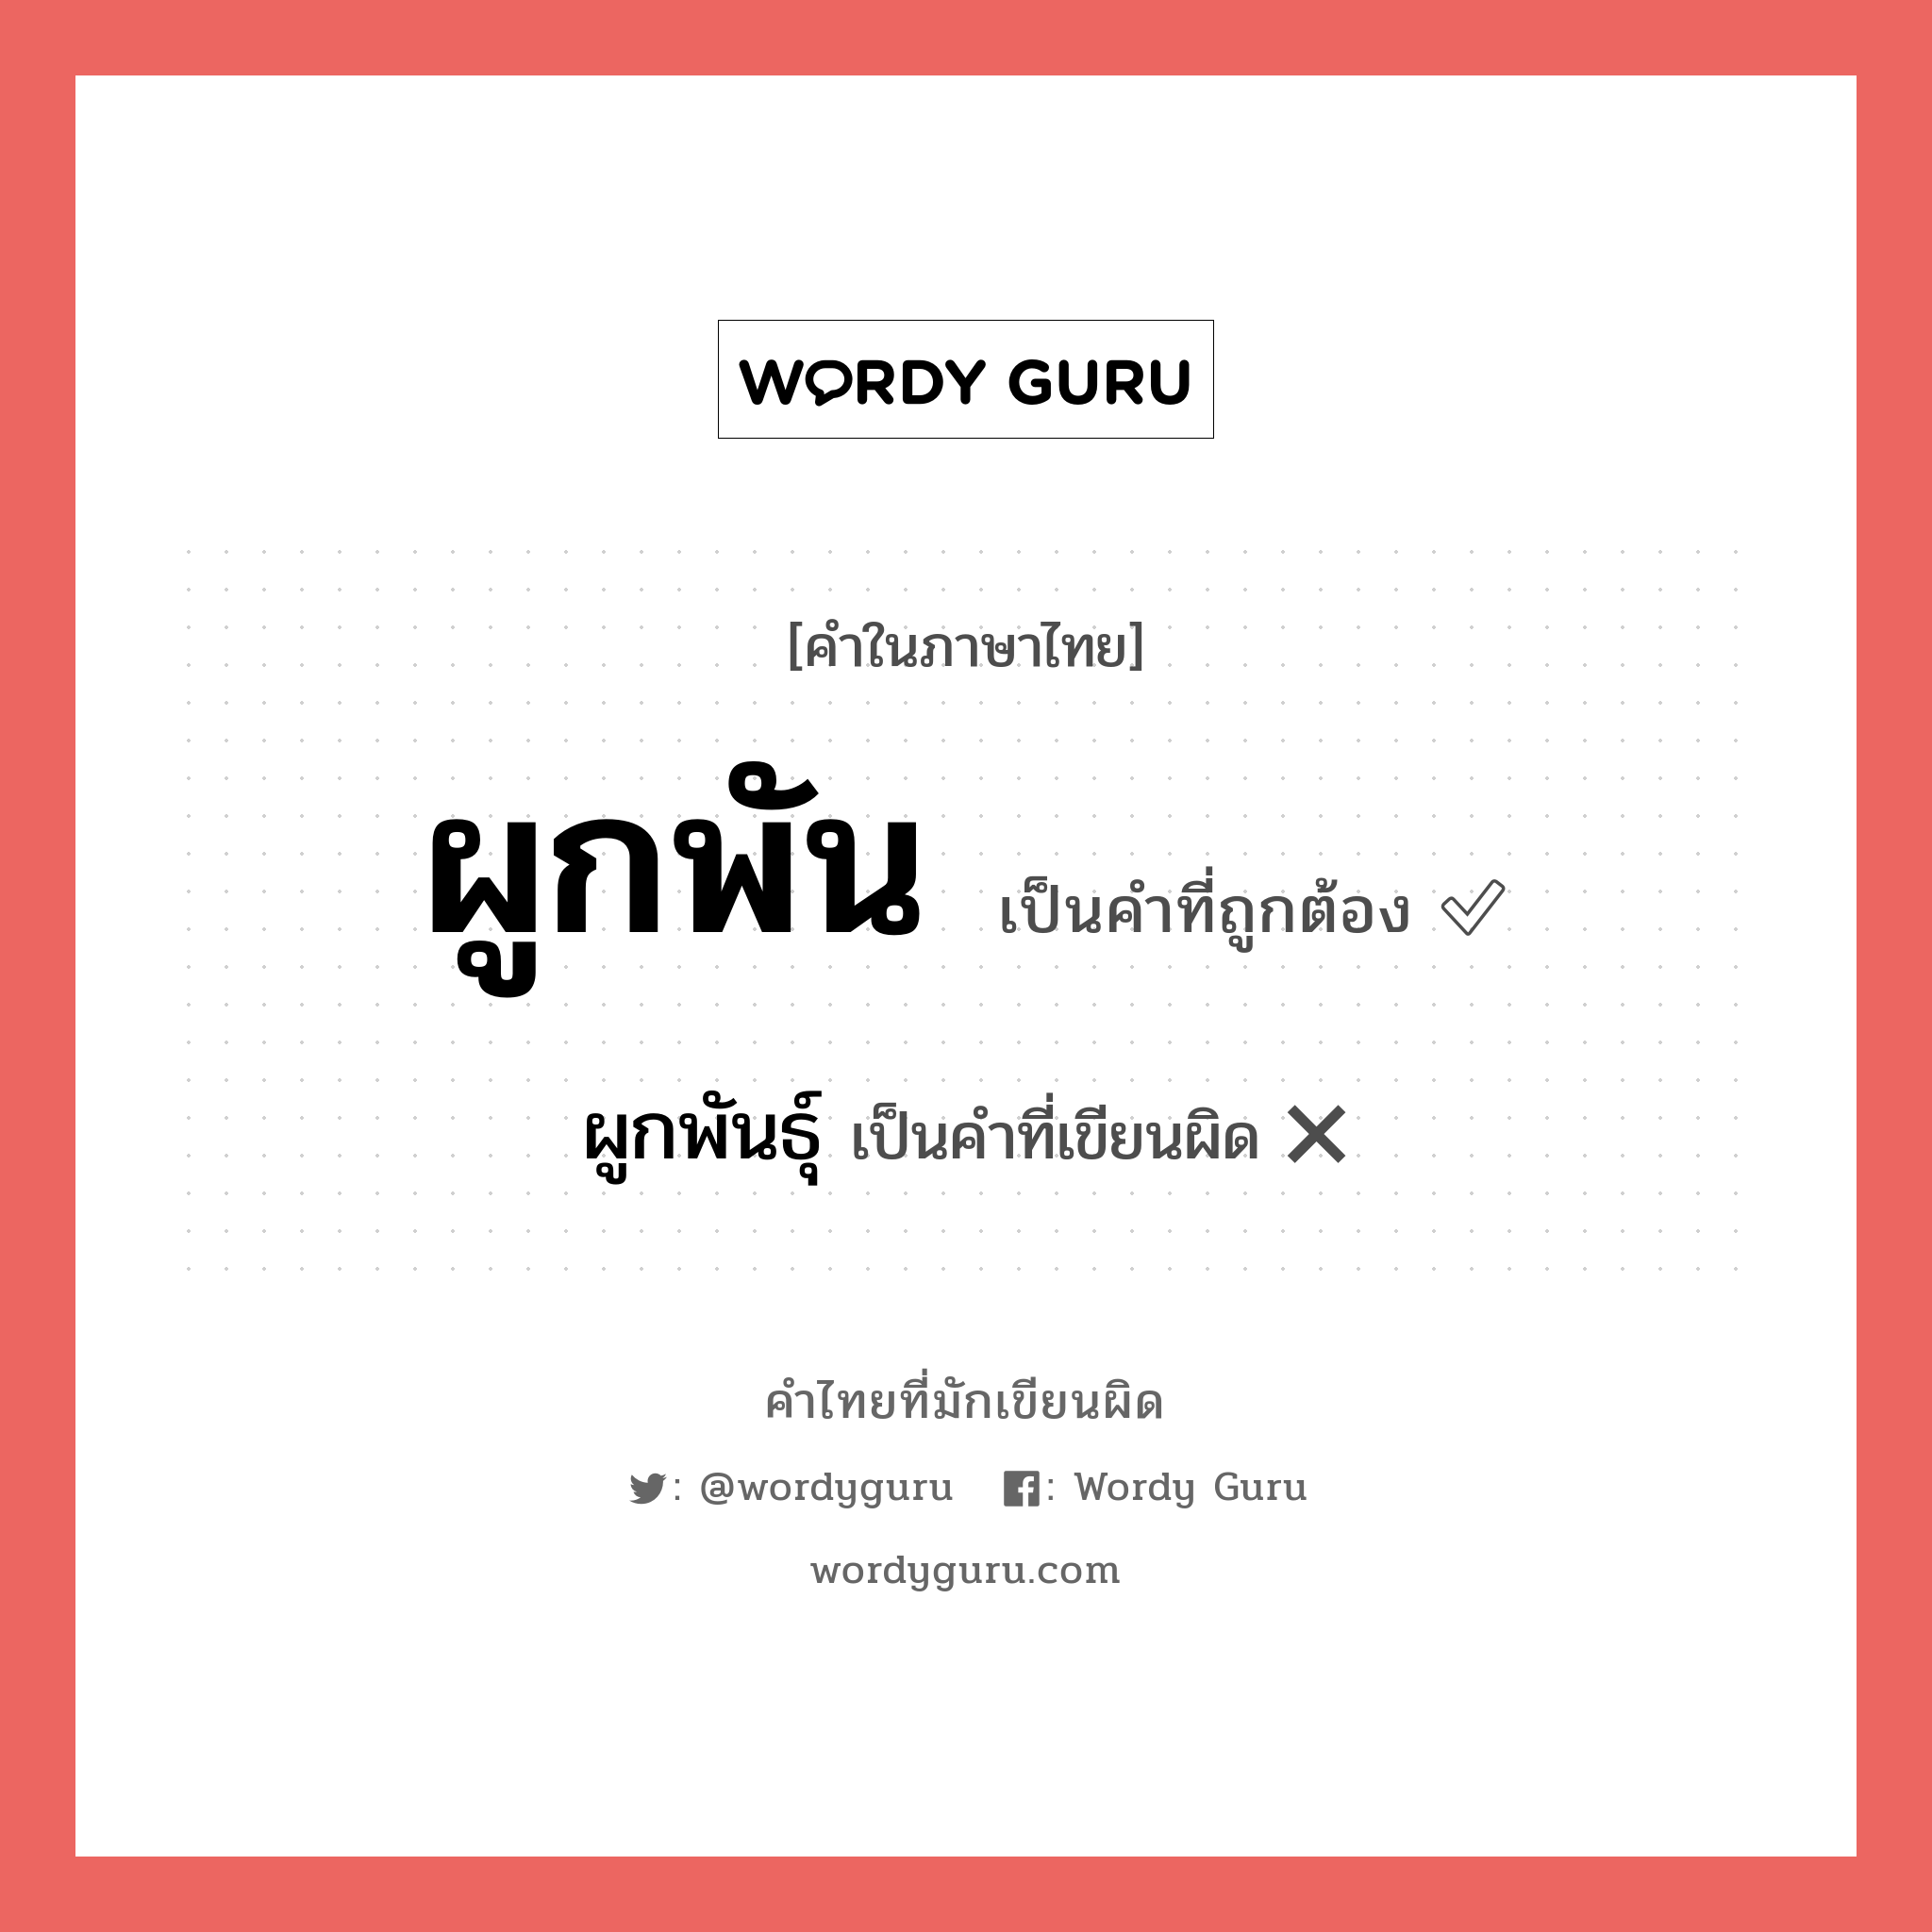 ผูกพันธุ์ หรือ ผูกพัน คำไหนเขียนถูก?, คำในภาษาไทยที่มักเขียนผิด ผูกพันธุ์ คำที่ผิด ❌ ผูกพัน